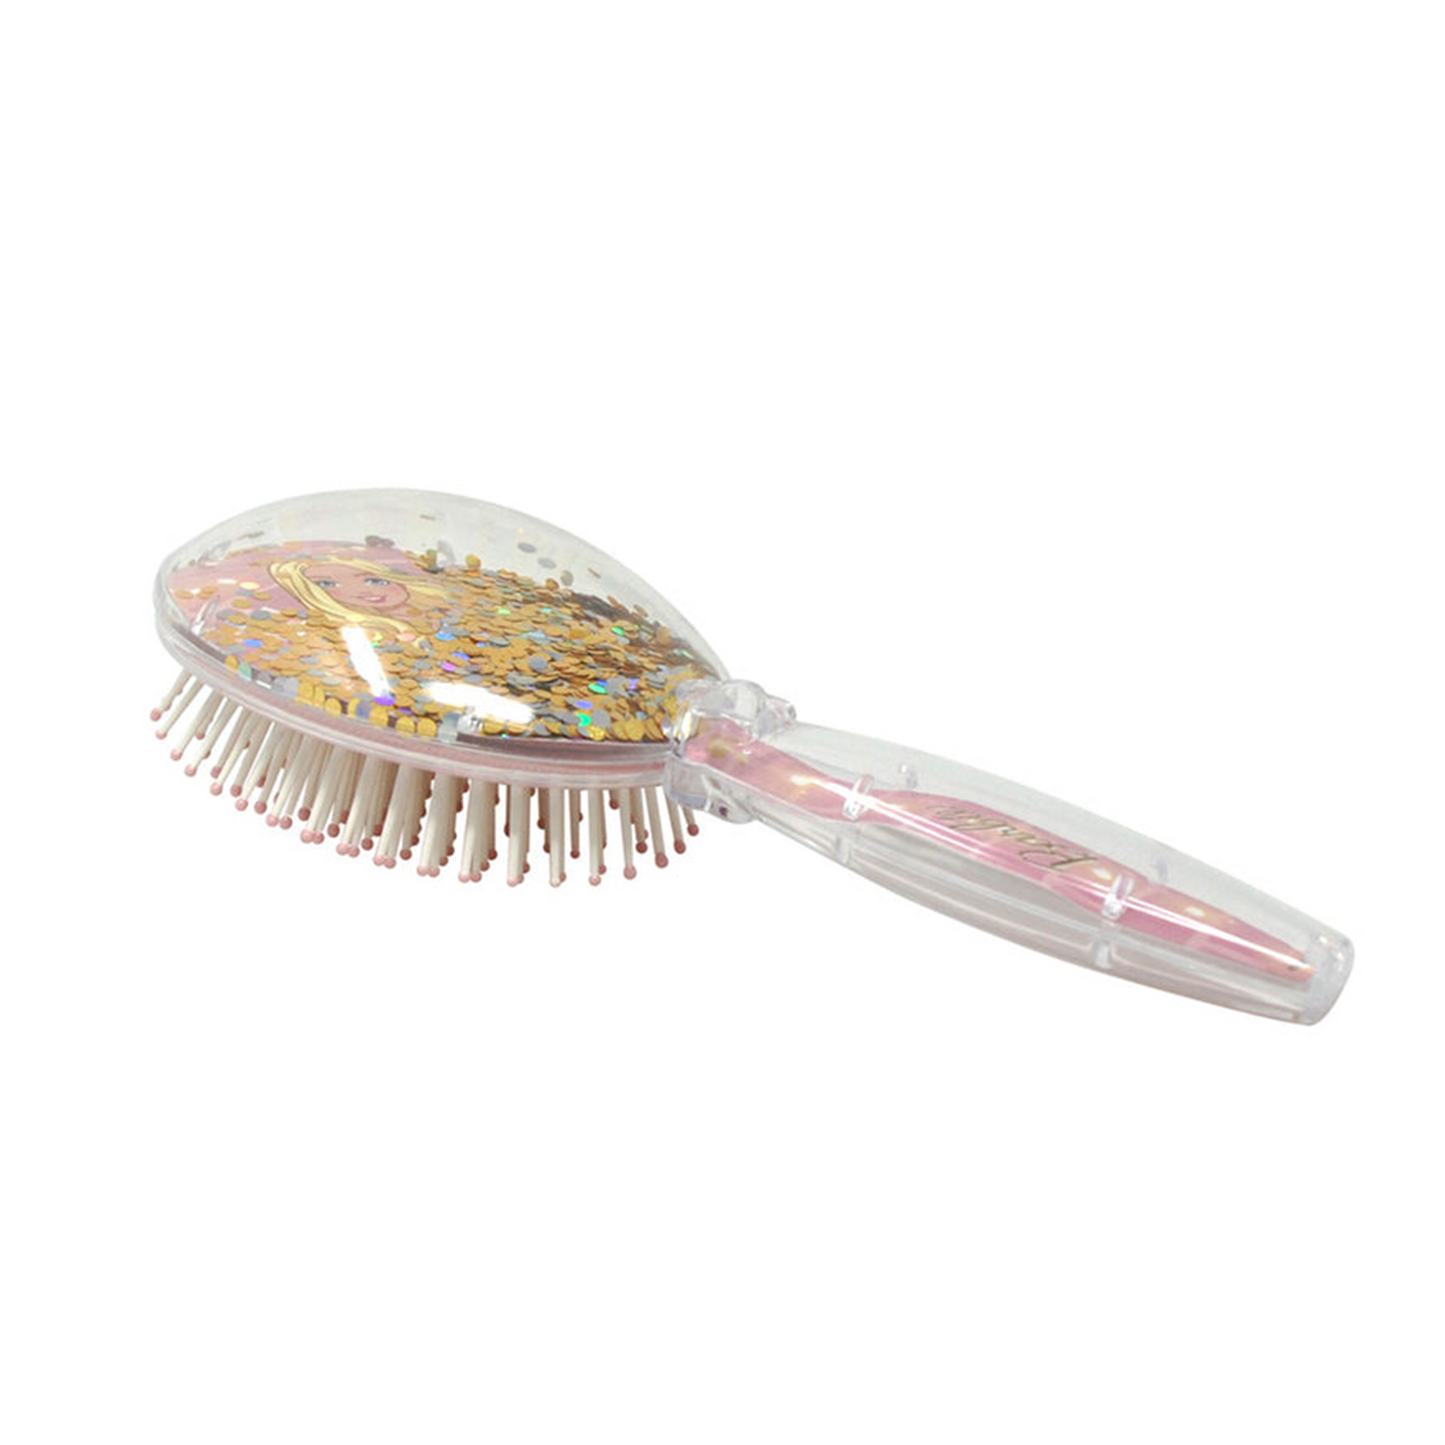 Barbie | Golden Blush Glitter Hair Brush